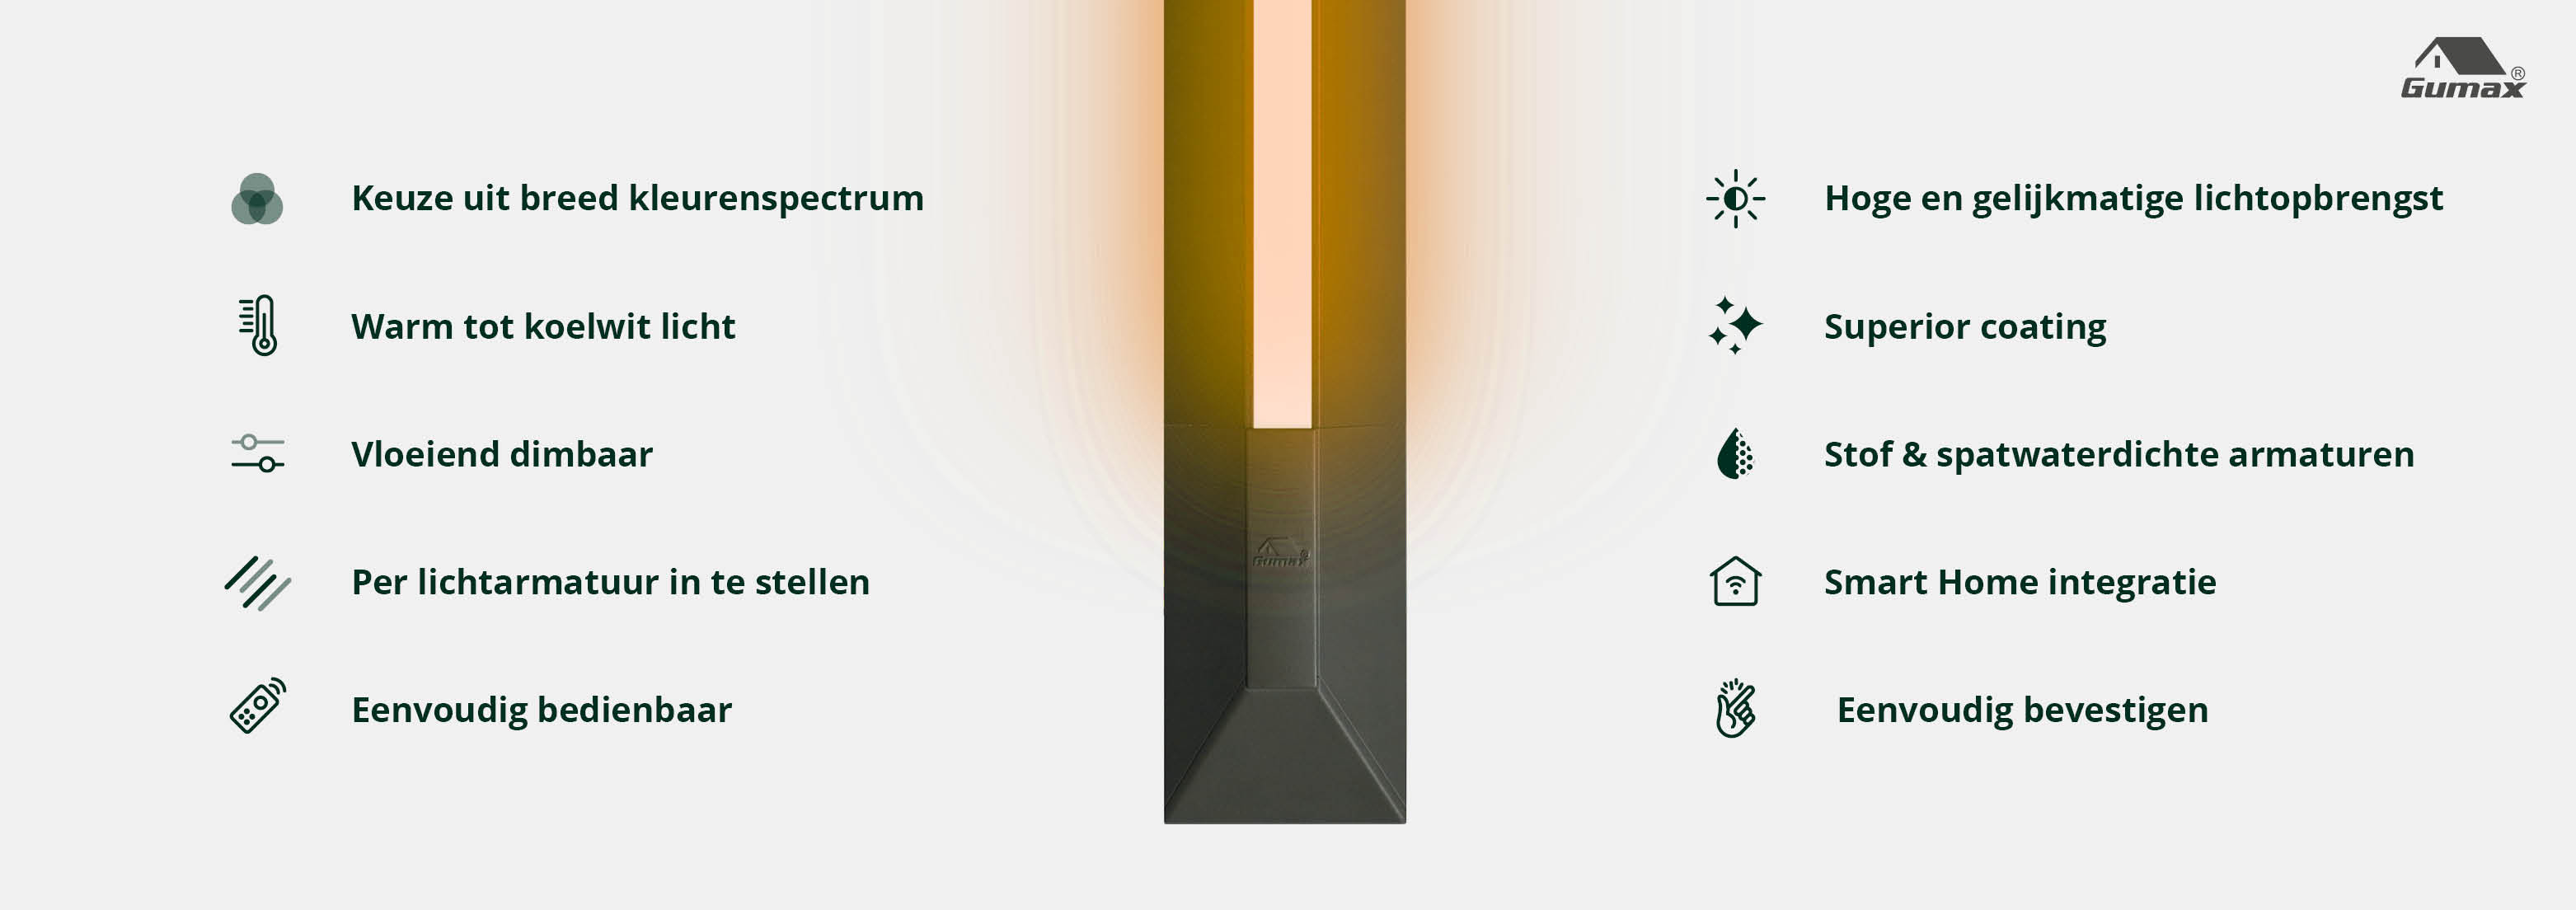 Gumax Lighting System - veranda verlichting voordelen